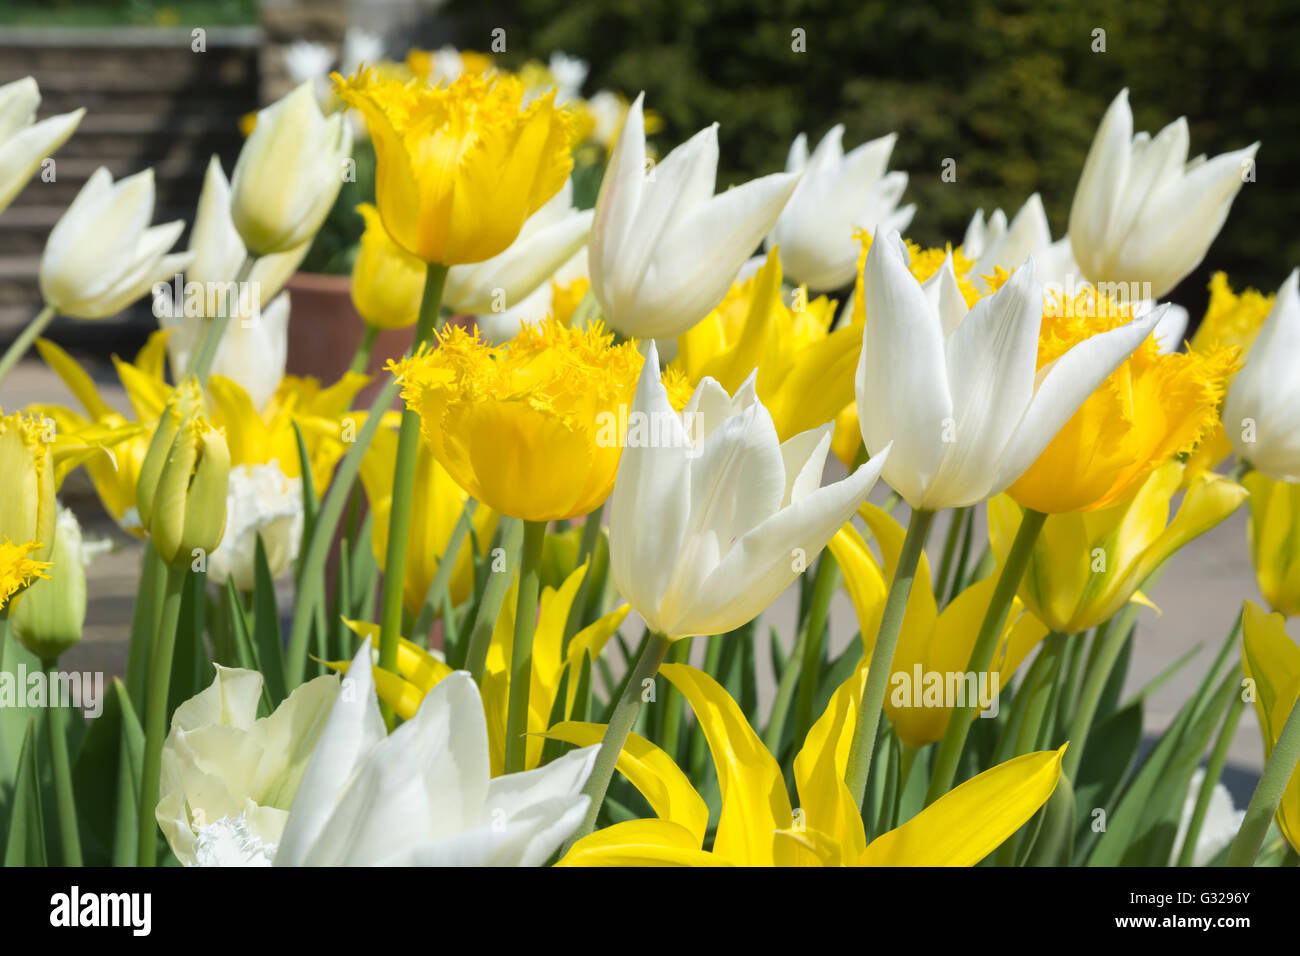 Tulips 'Hamilton' (yellow fringe) 'West Point' (yellow no fringe) & 'White Triumphator' Stock Photo